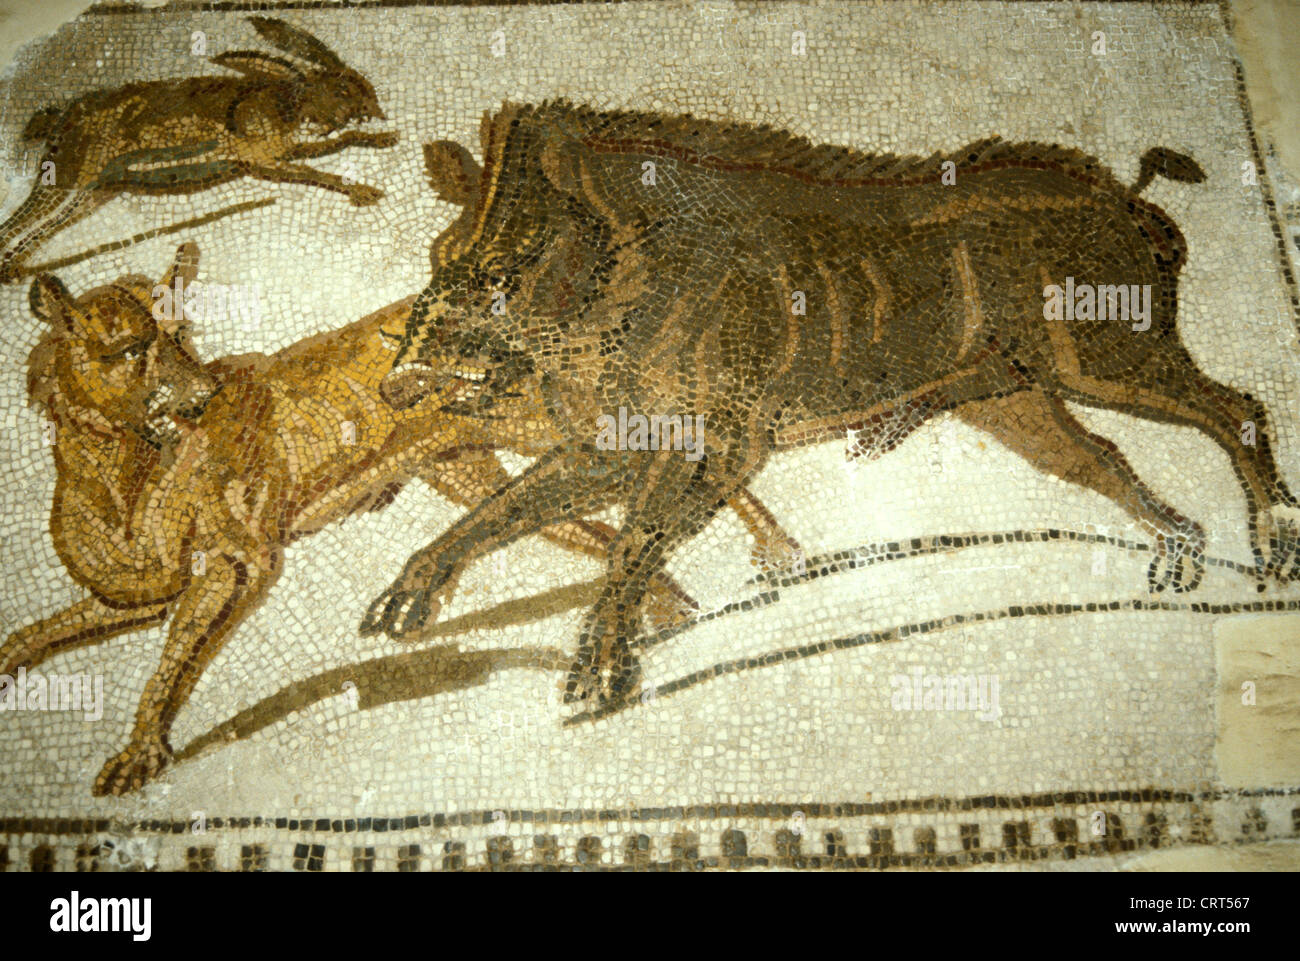 Début du 3e siècle av. J.-C. mosaïque romaine représentant une chasse au sanglier et au lièvre. De Hadrumetum (Sousse), Tunisie. Musée du Bardo, Tunis, Tunisie Banque D'Images